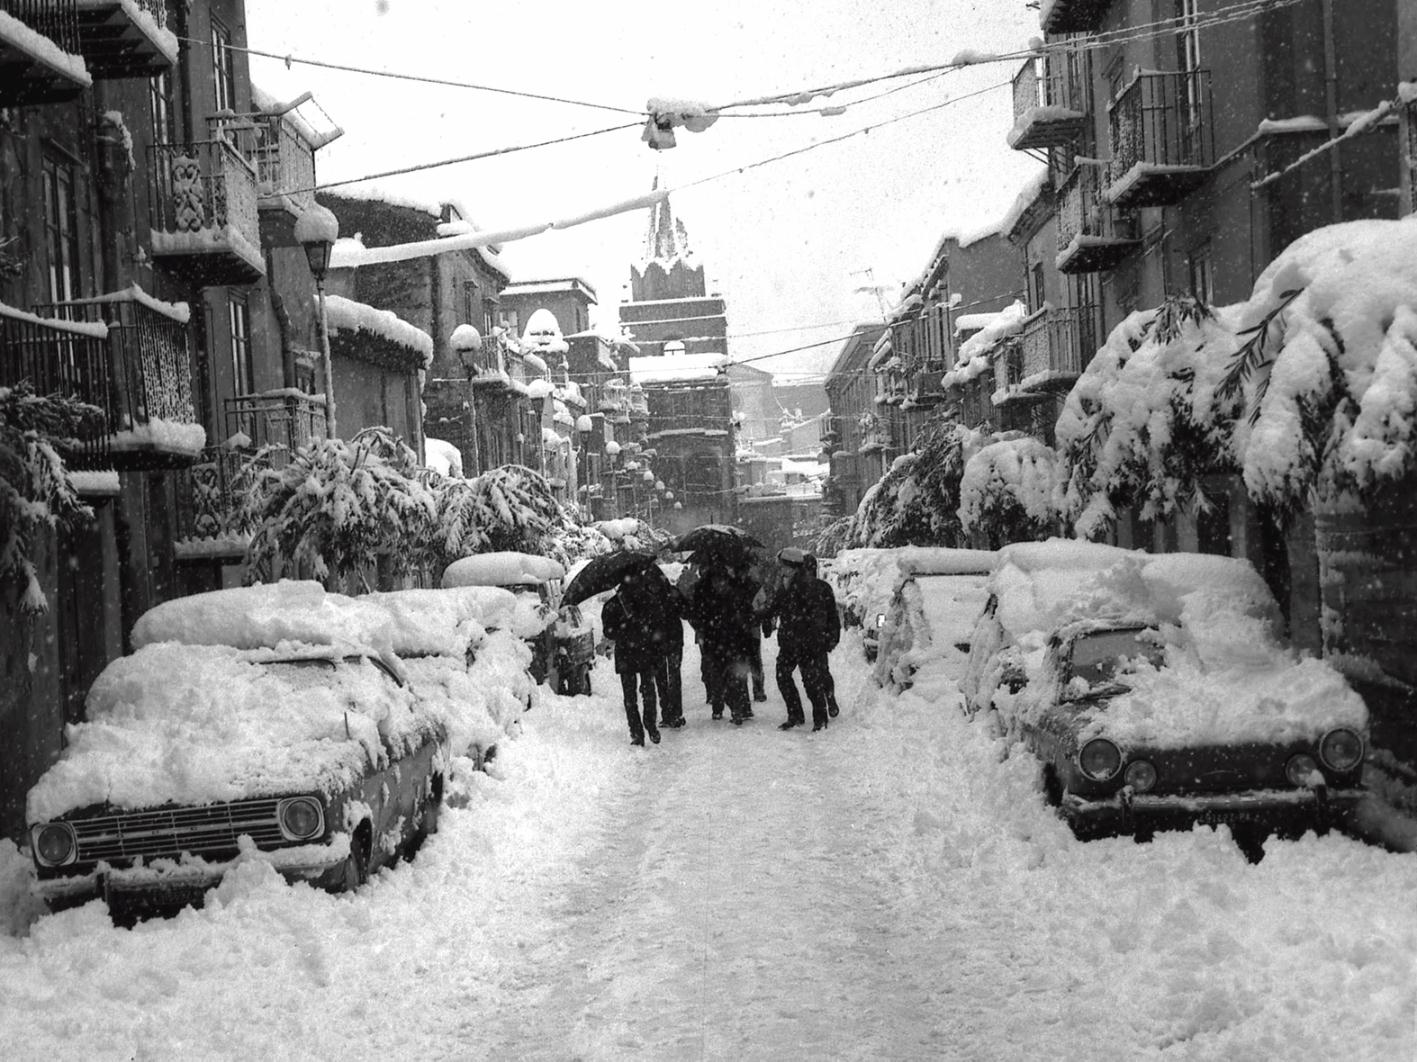 La via Sant'Anna dopo la nevicata dell'81